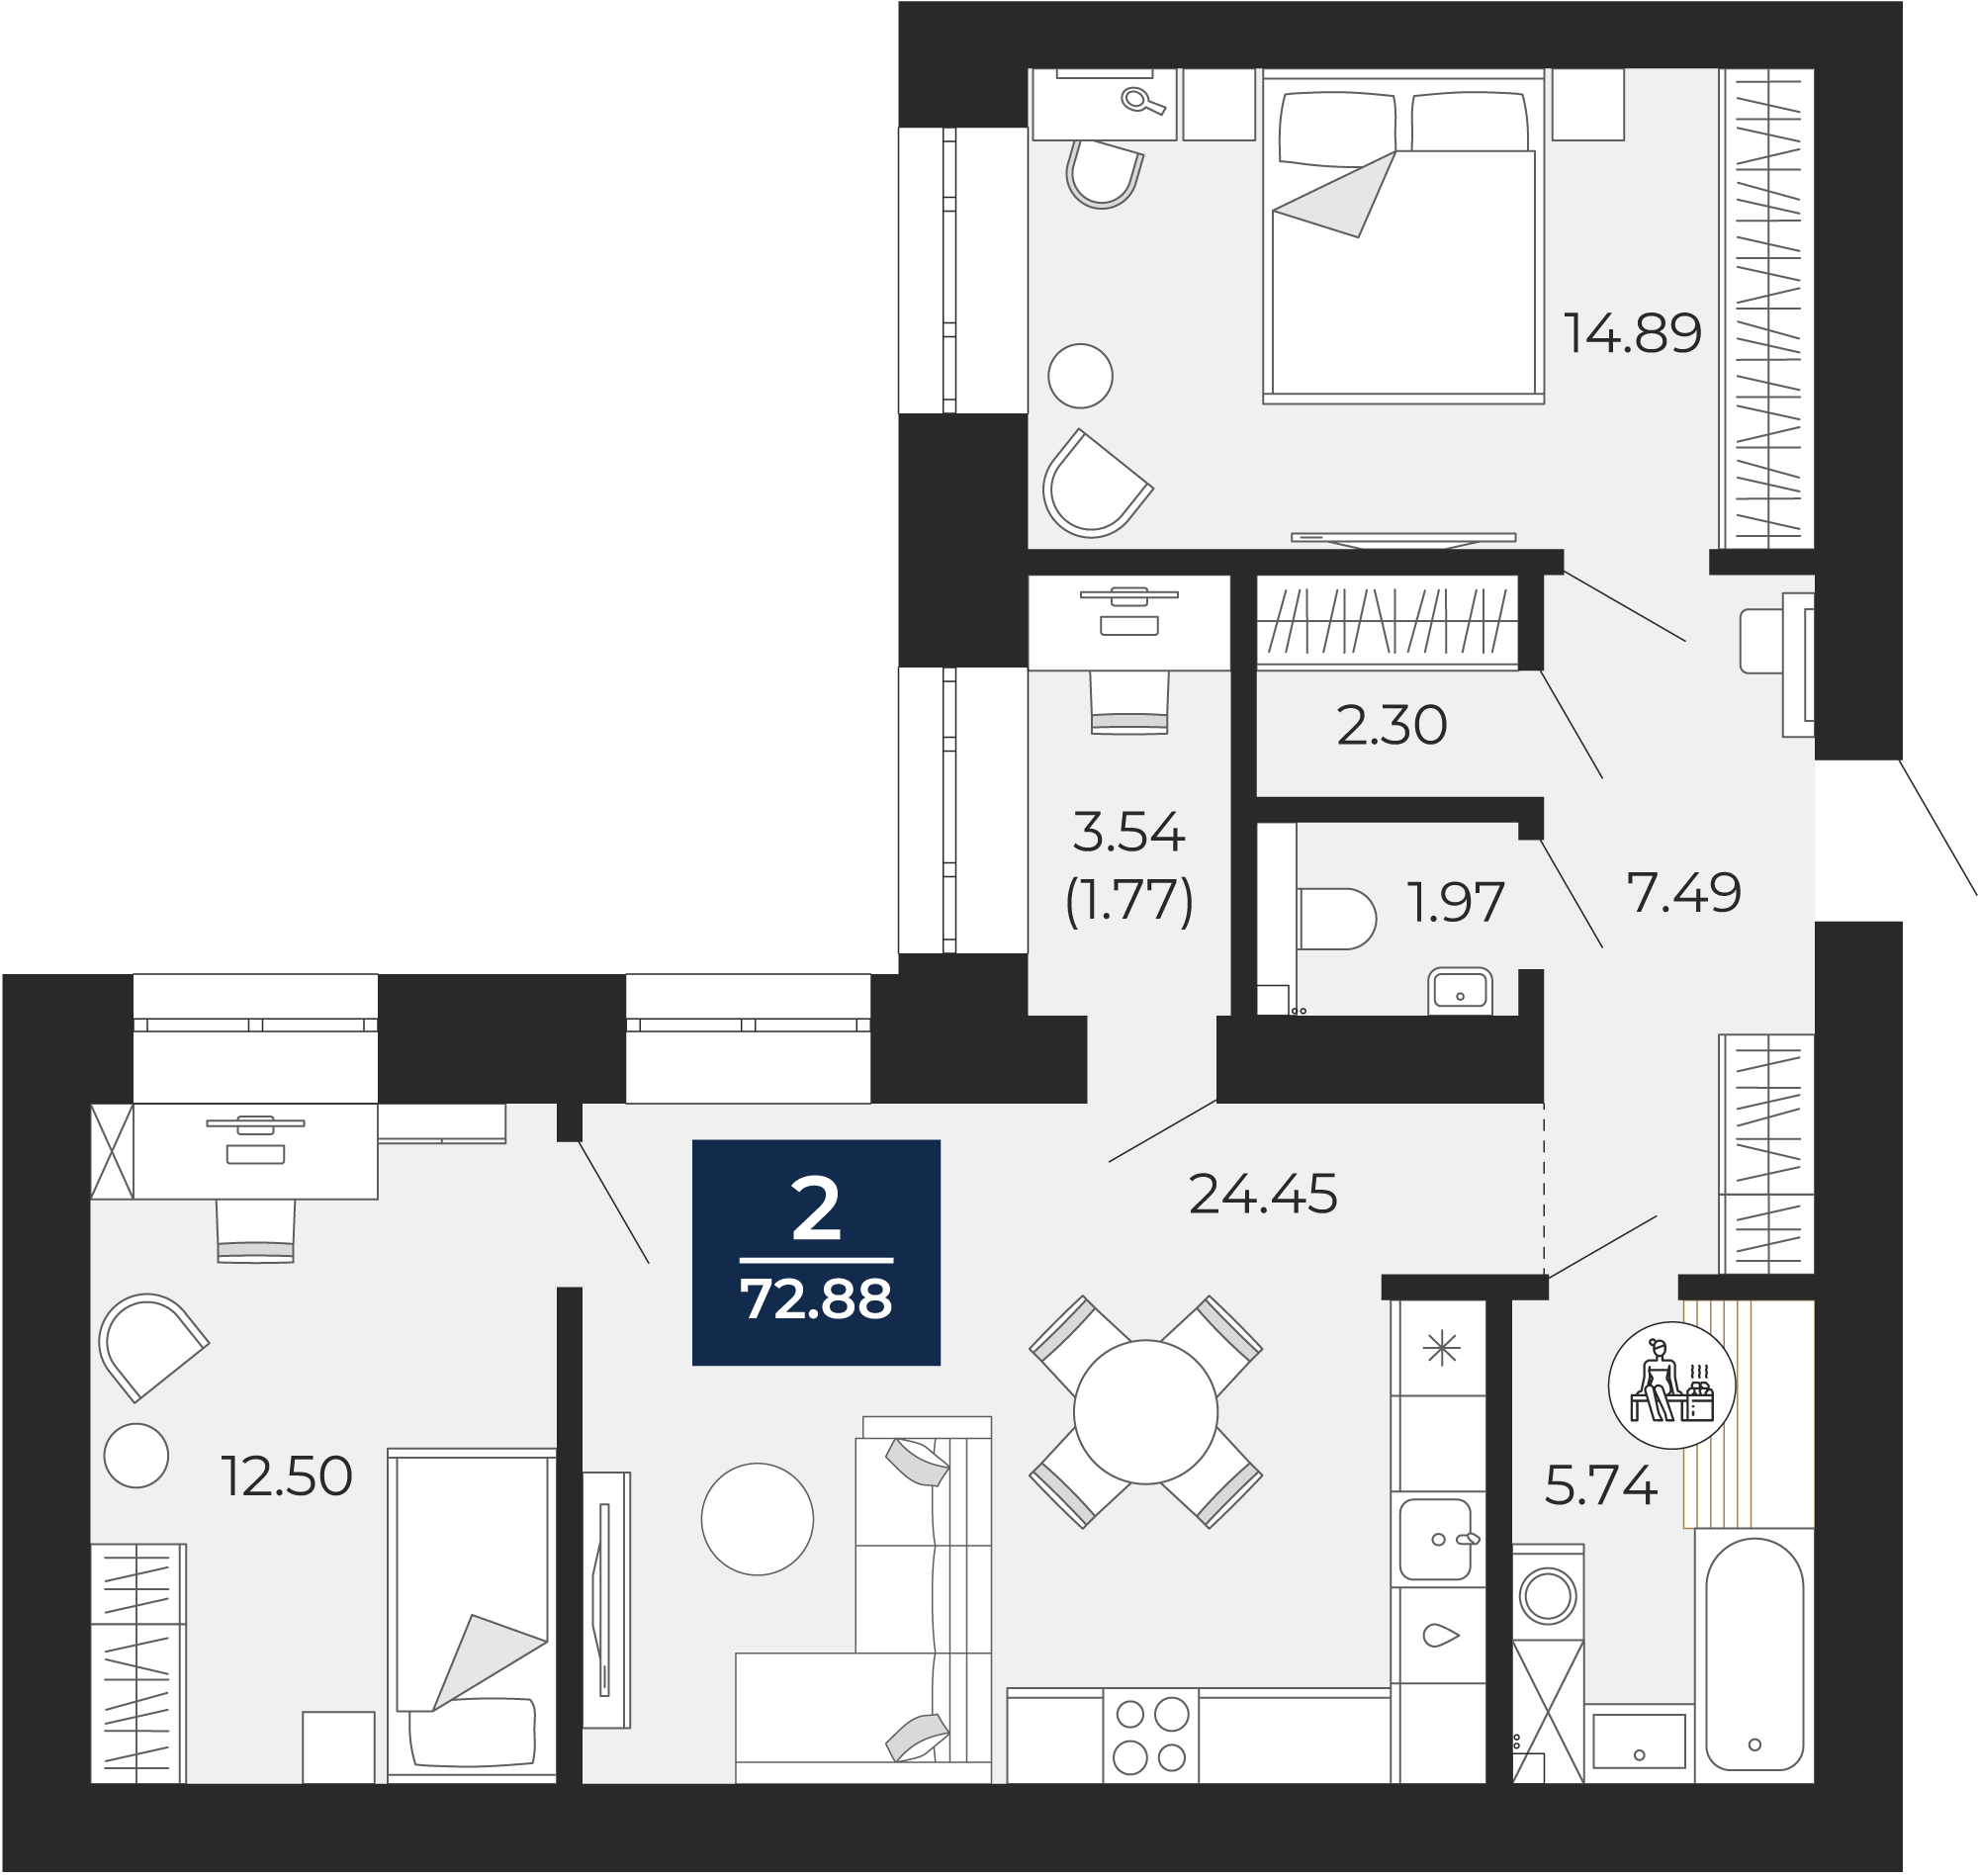 Квартира № 132, 2-комнатная, 72.88 кв. м, 2 этаж